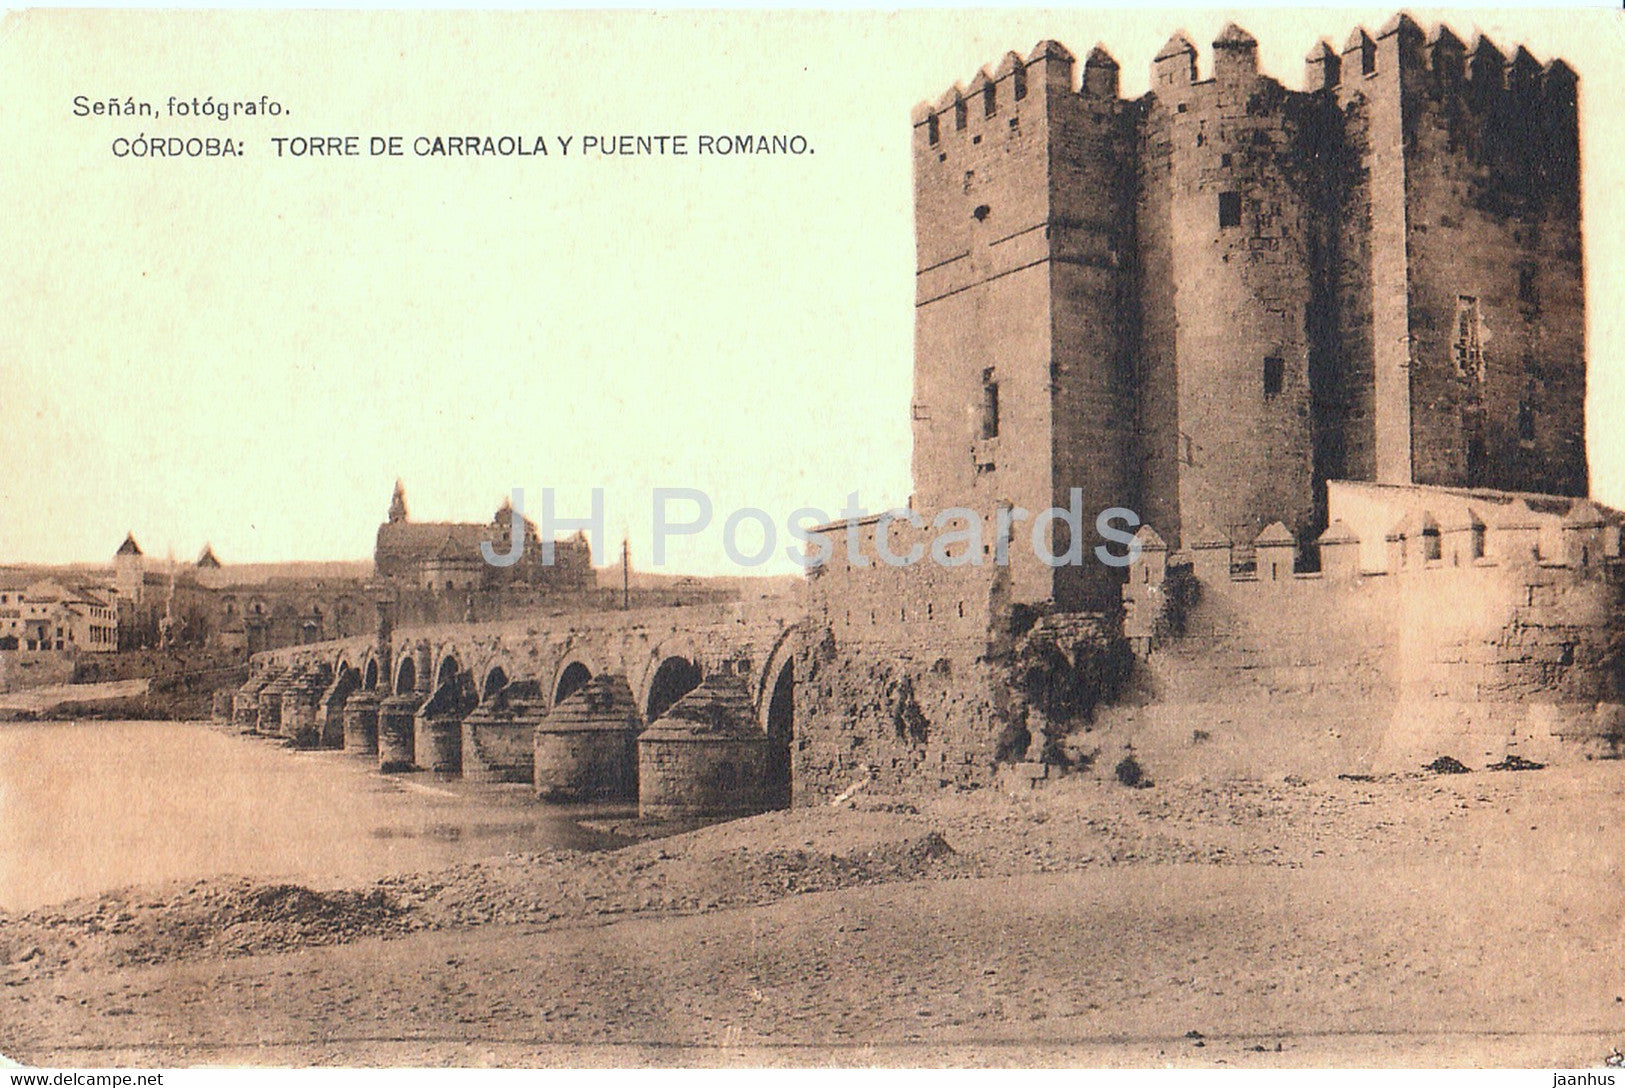 Cordoba - Torre de Carraola y Puente Romano - old postcard - 1928 - Spain - used - JH Postcards